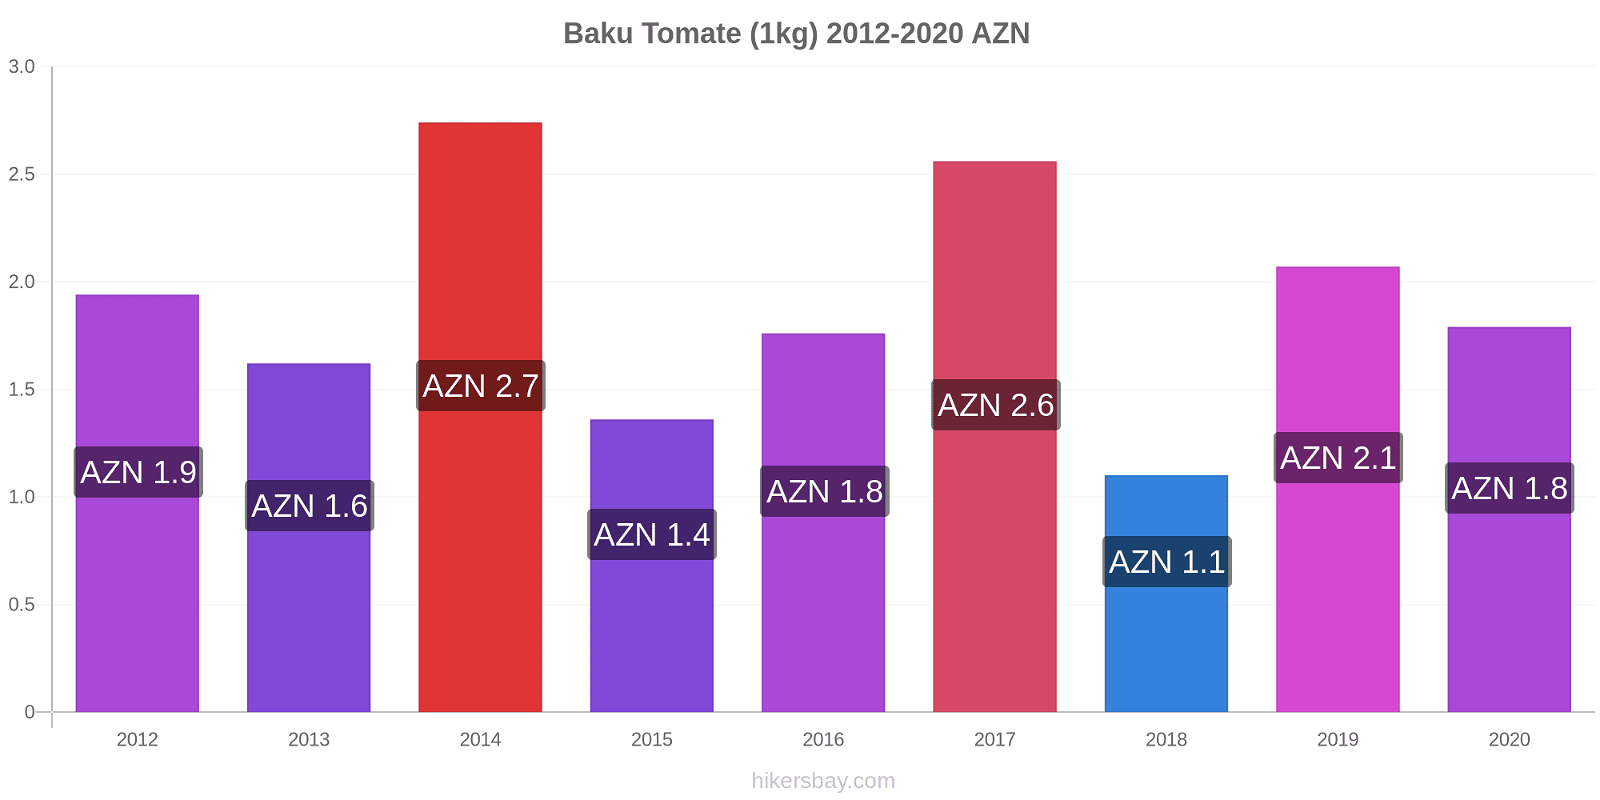 Baku variação de preço Tomate (1kg) hikersbay.com